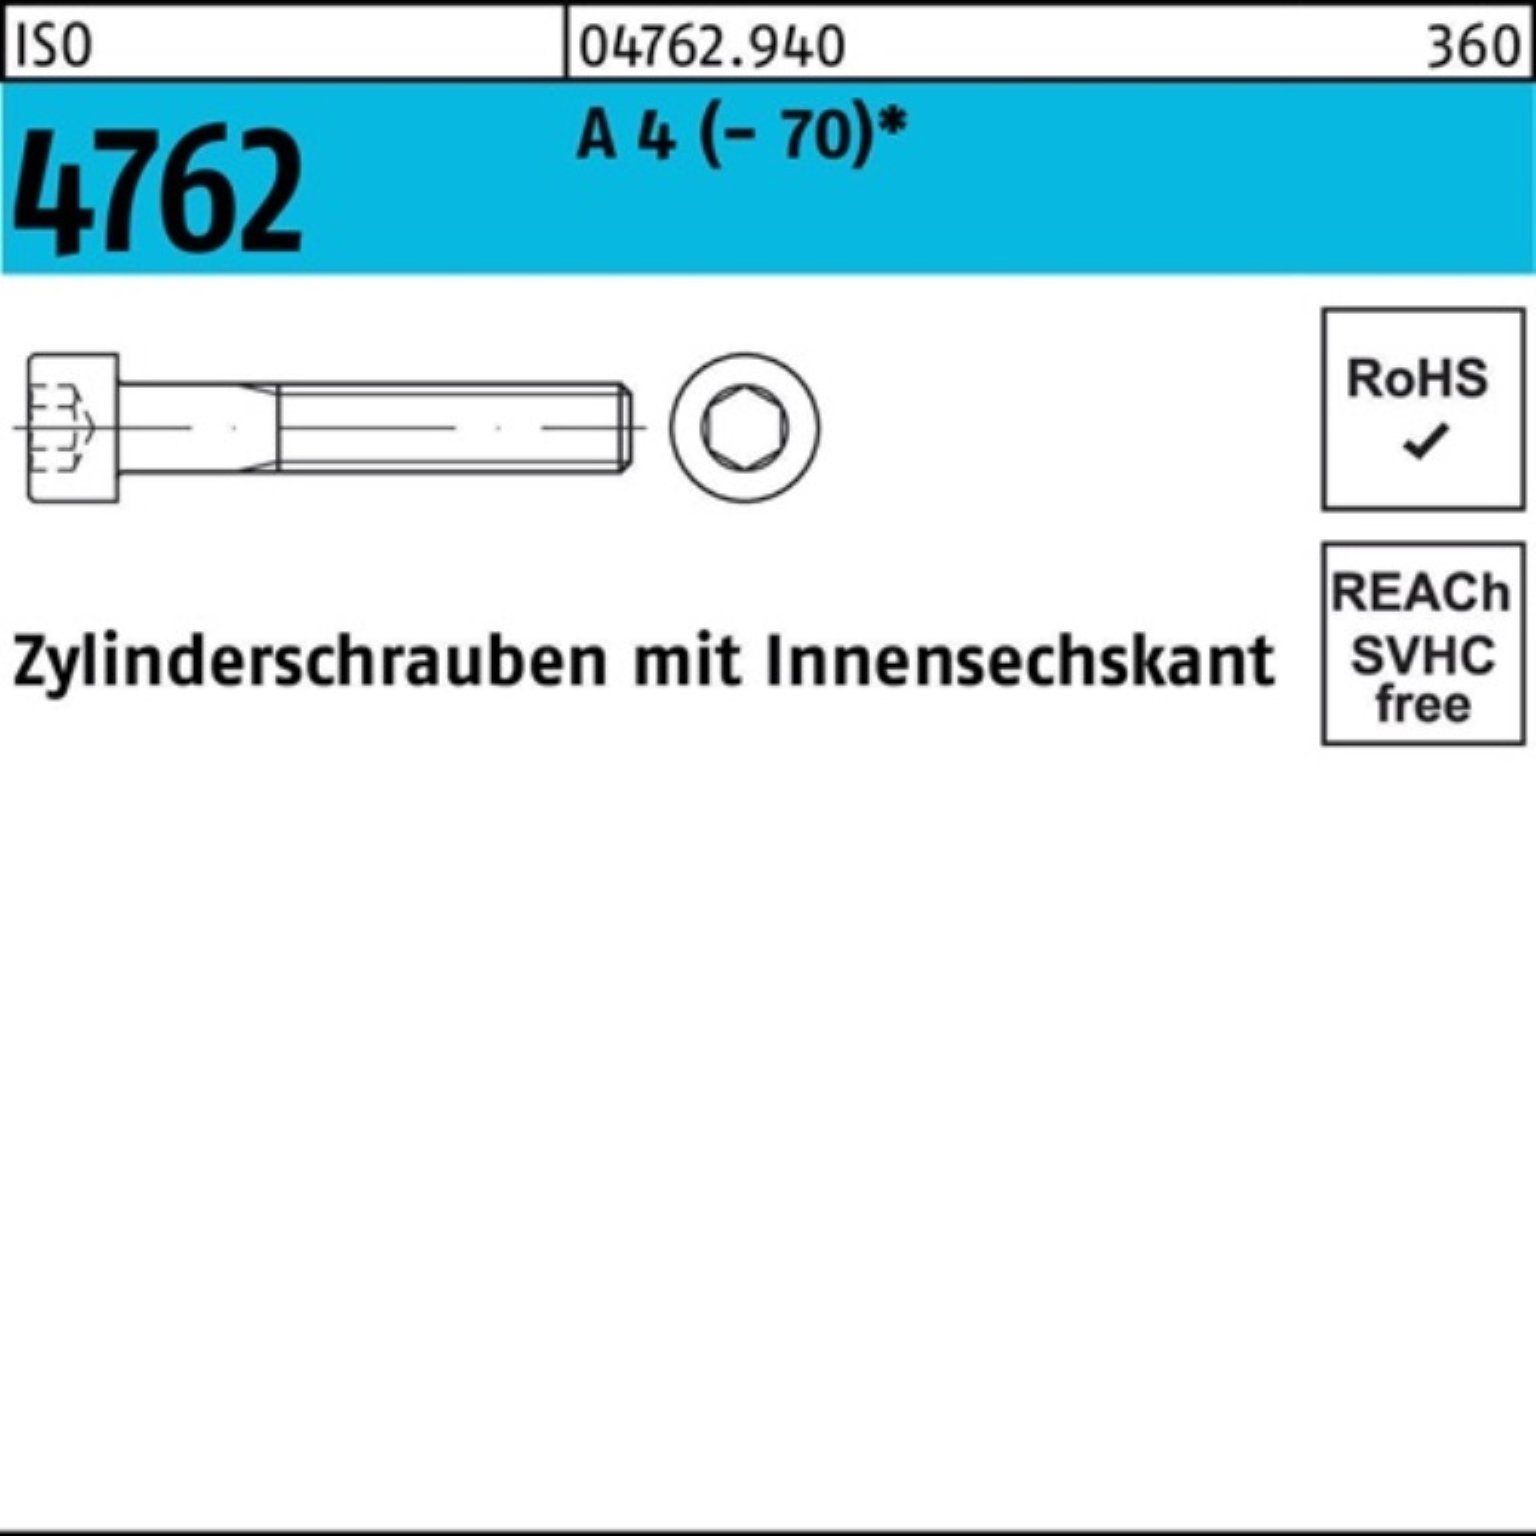 S Pack Zylinderschraube Zylinderschraube Reyher 1 (70) 4762 A Innen-6kt 4 160 ISO 100er M16x